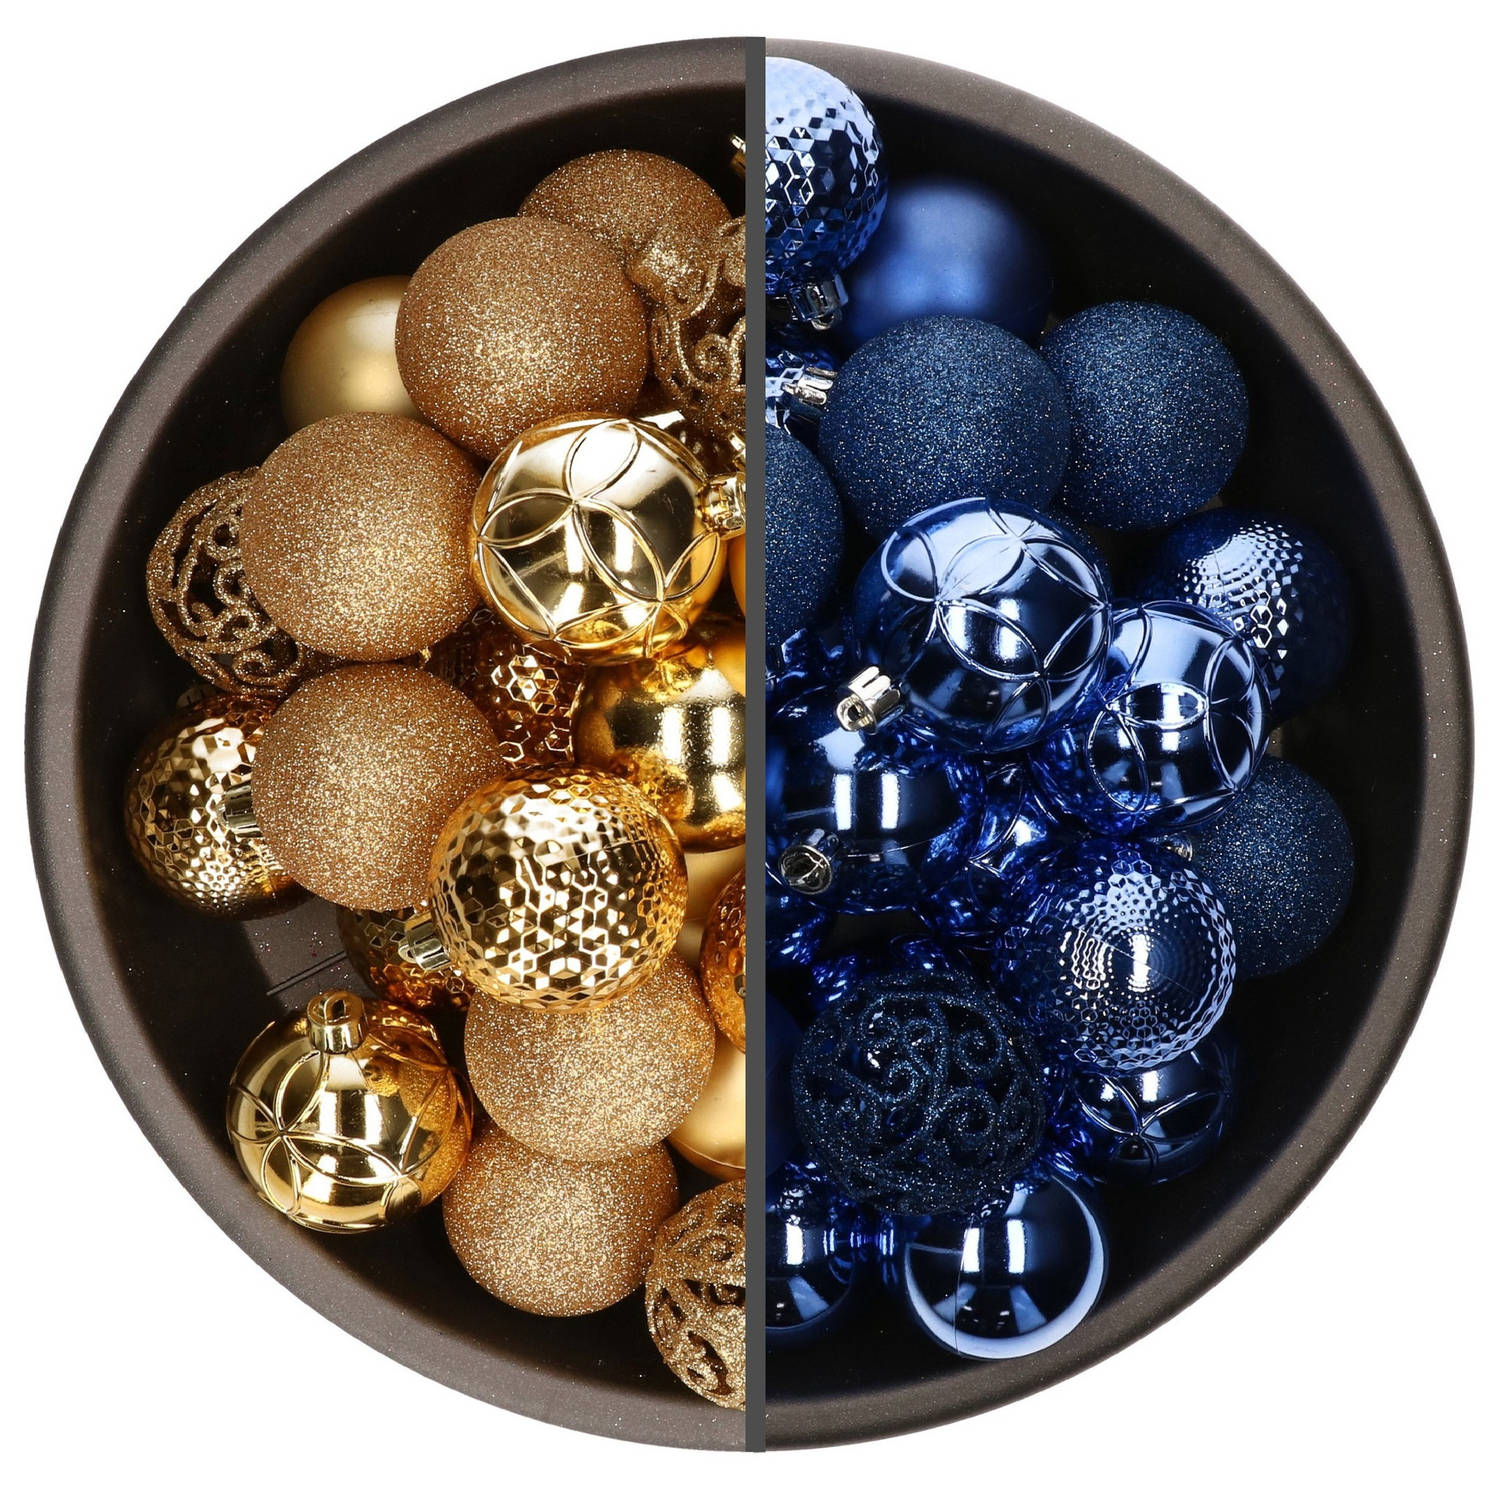 74x stuks kunststof kerstballen mix van goud en kobalt blauw 6 cm - Kerstbal